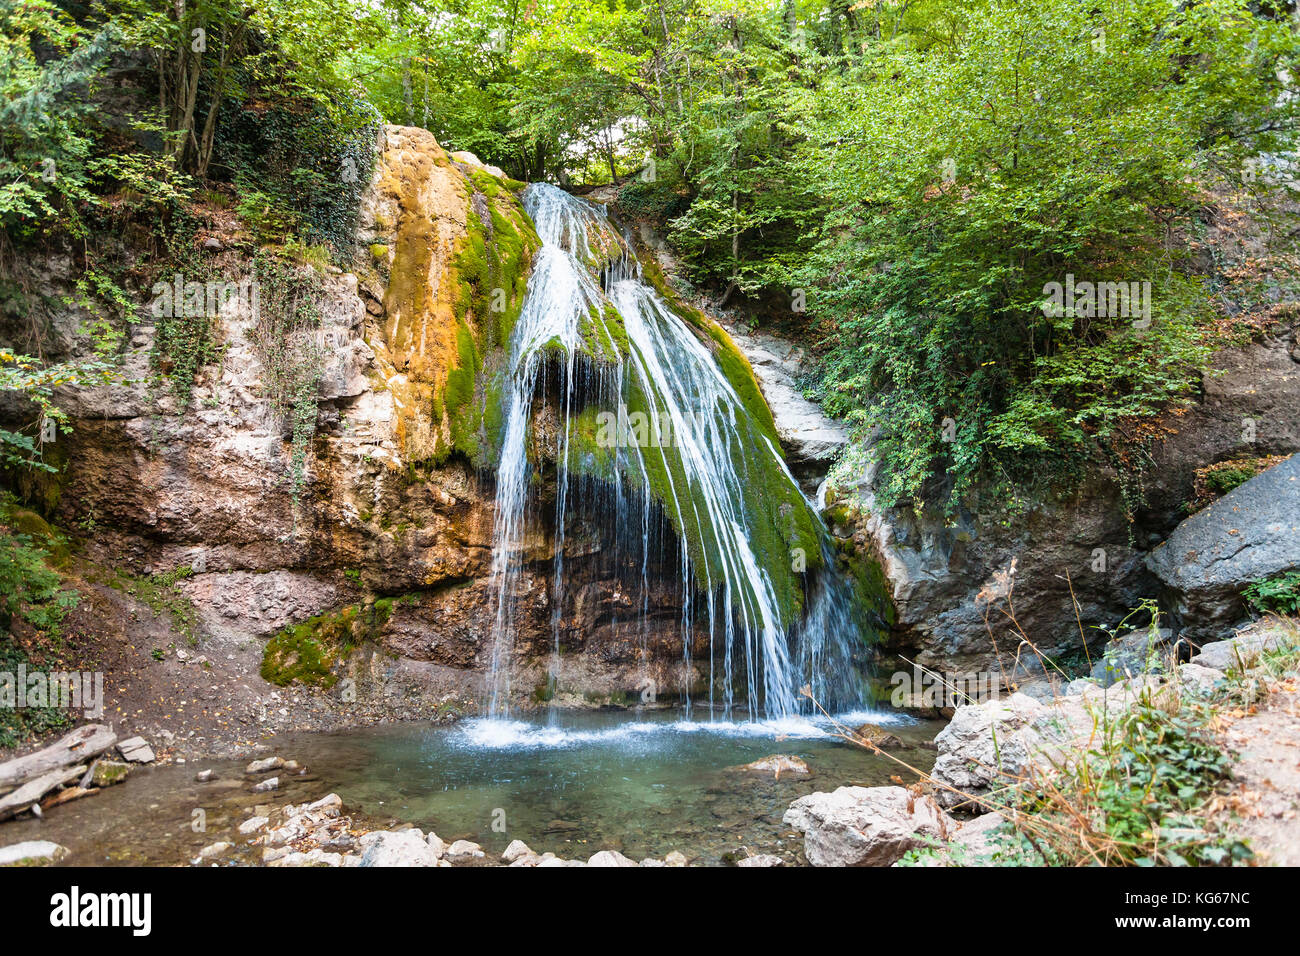 Reise auf die Krim-east-uzen Fluss mit djur - djur Wasserfall haphal Schlucht von habhal hydrologischen finden Naturpark in Krimberge im septemb Stockfoto